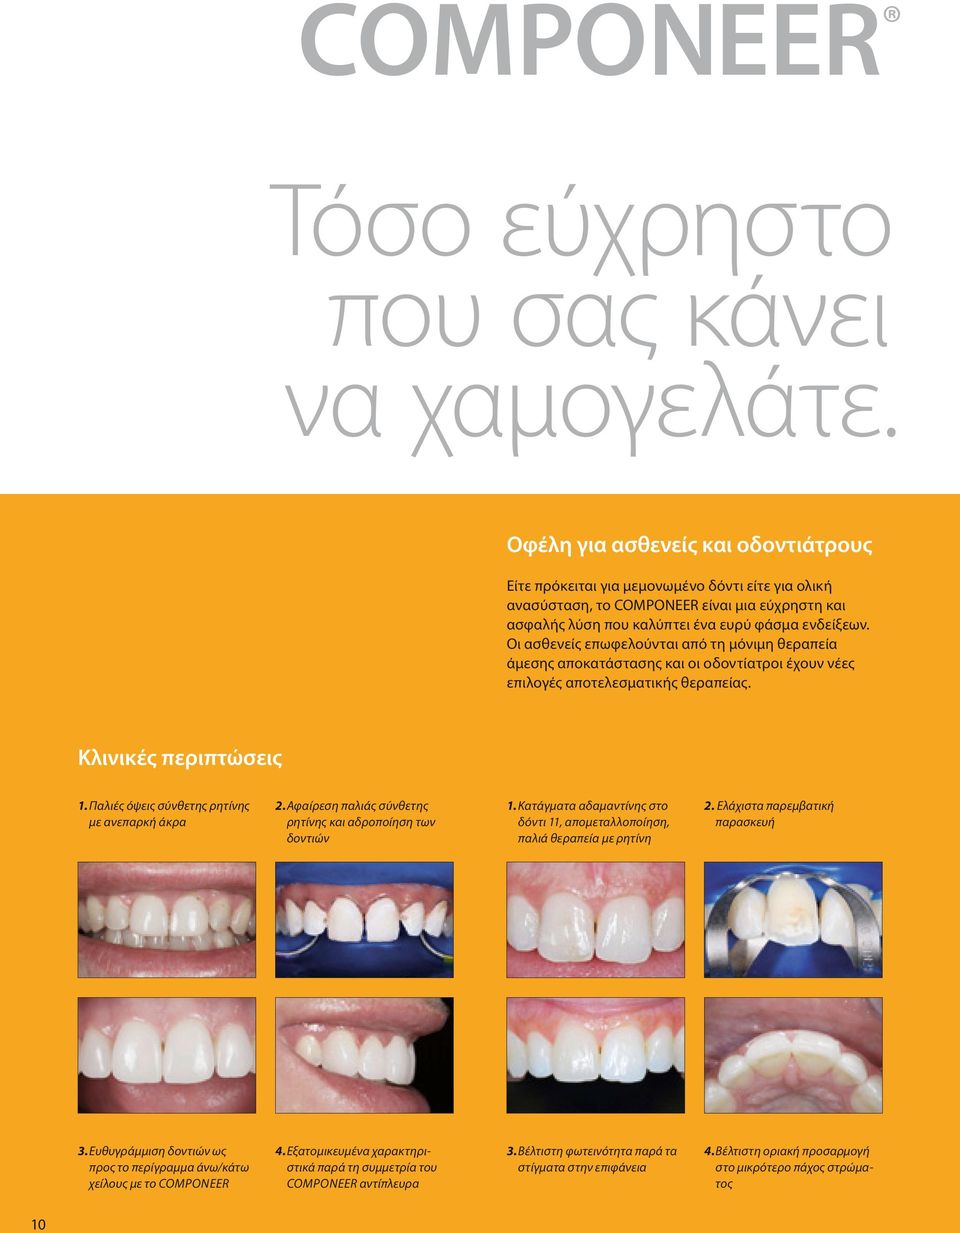 Οι ασθενείς επωφελούνται από τη μόνιμη θεραπεία άμεσης αποκατάστασης και οι οδοντίατροι έχουν νέες επιλογές αποτελεσματικής θεραπείας. Κλινικές περιπτώσεις 1.